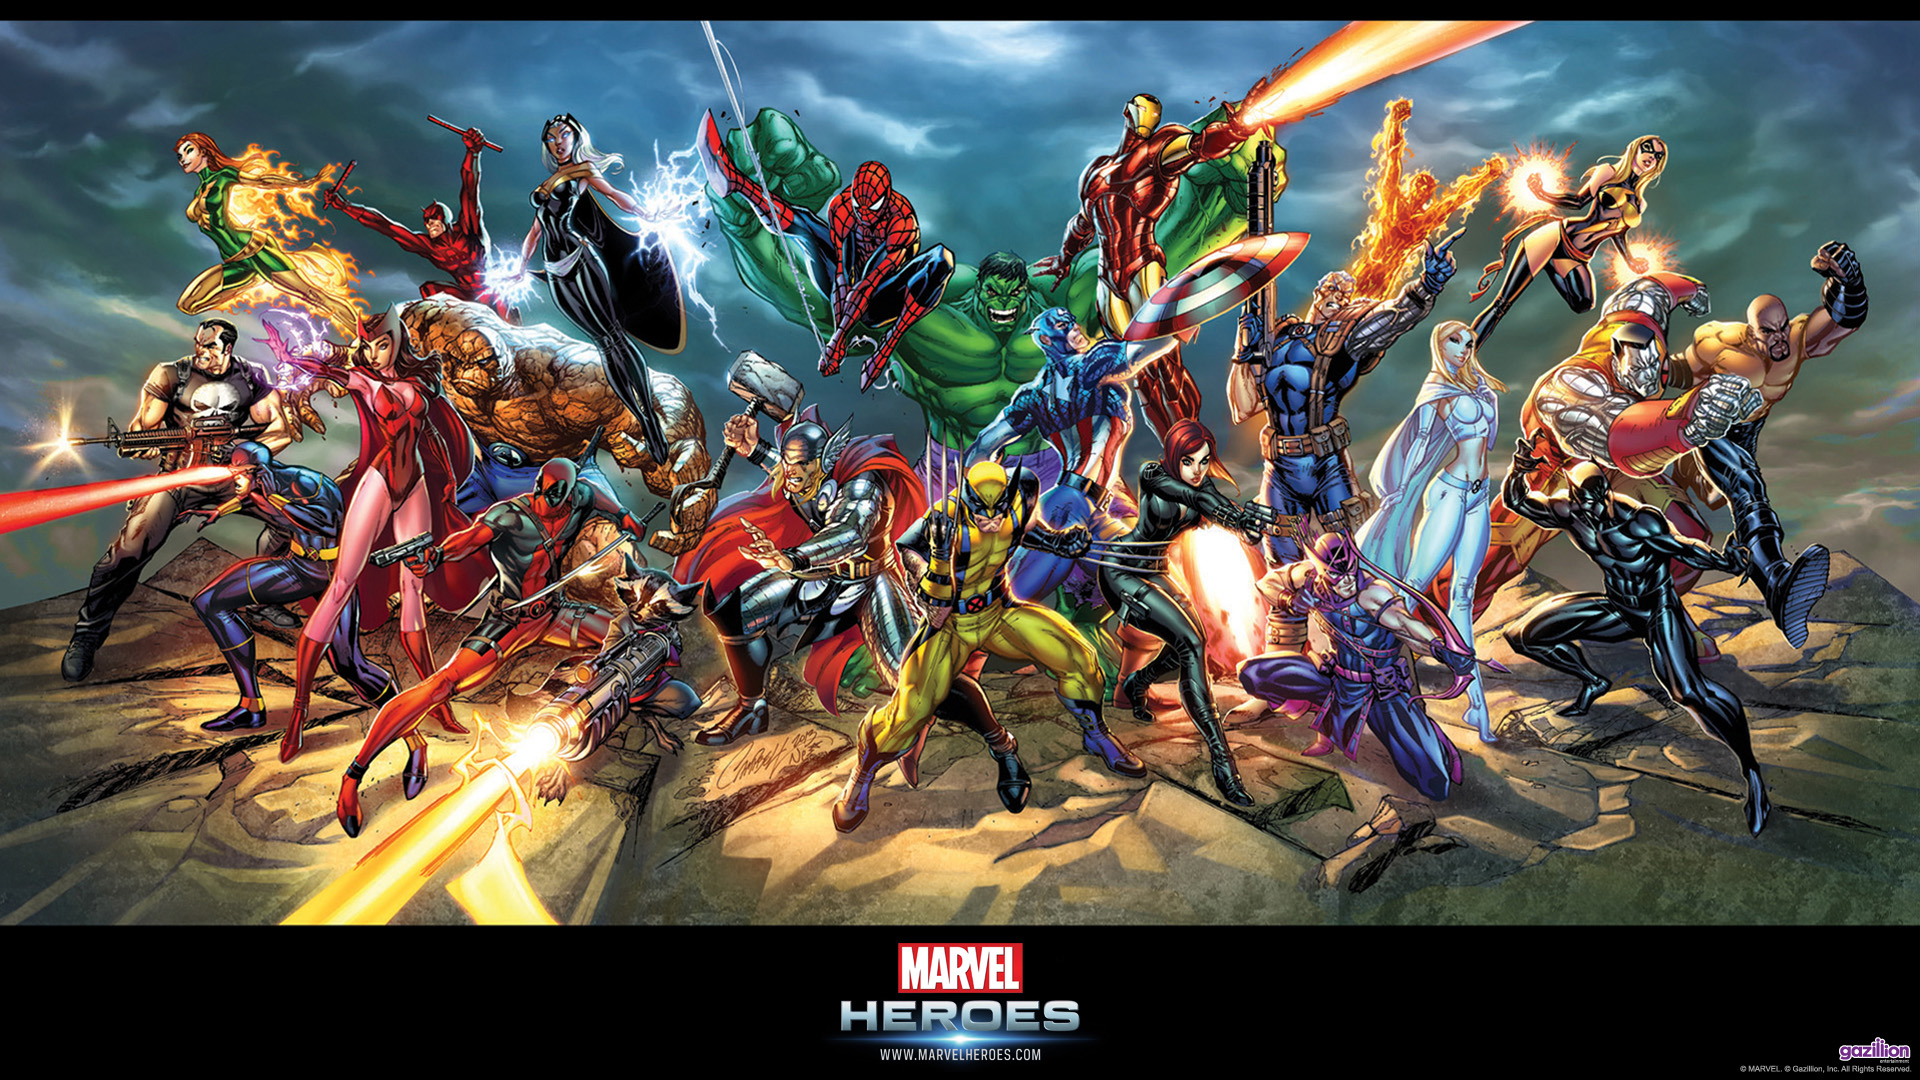 Marvel Heroes Full HD Wallpaper 1920x1080 Slotsmarvel